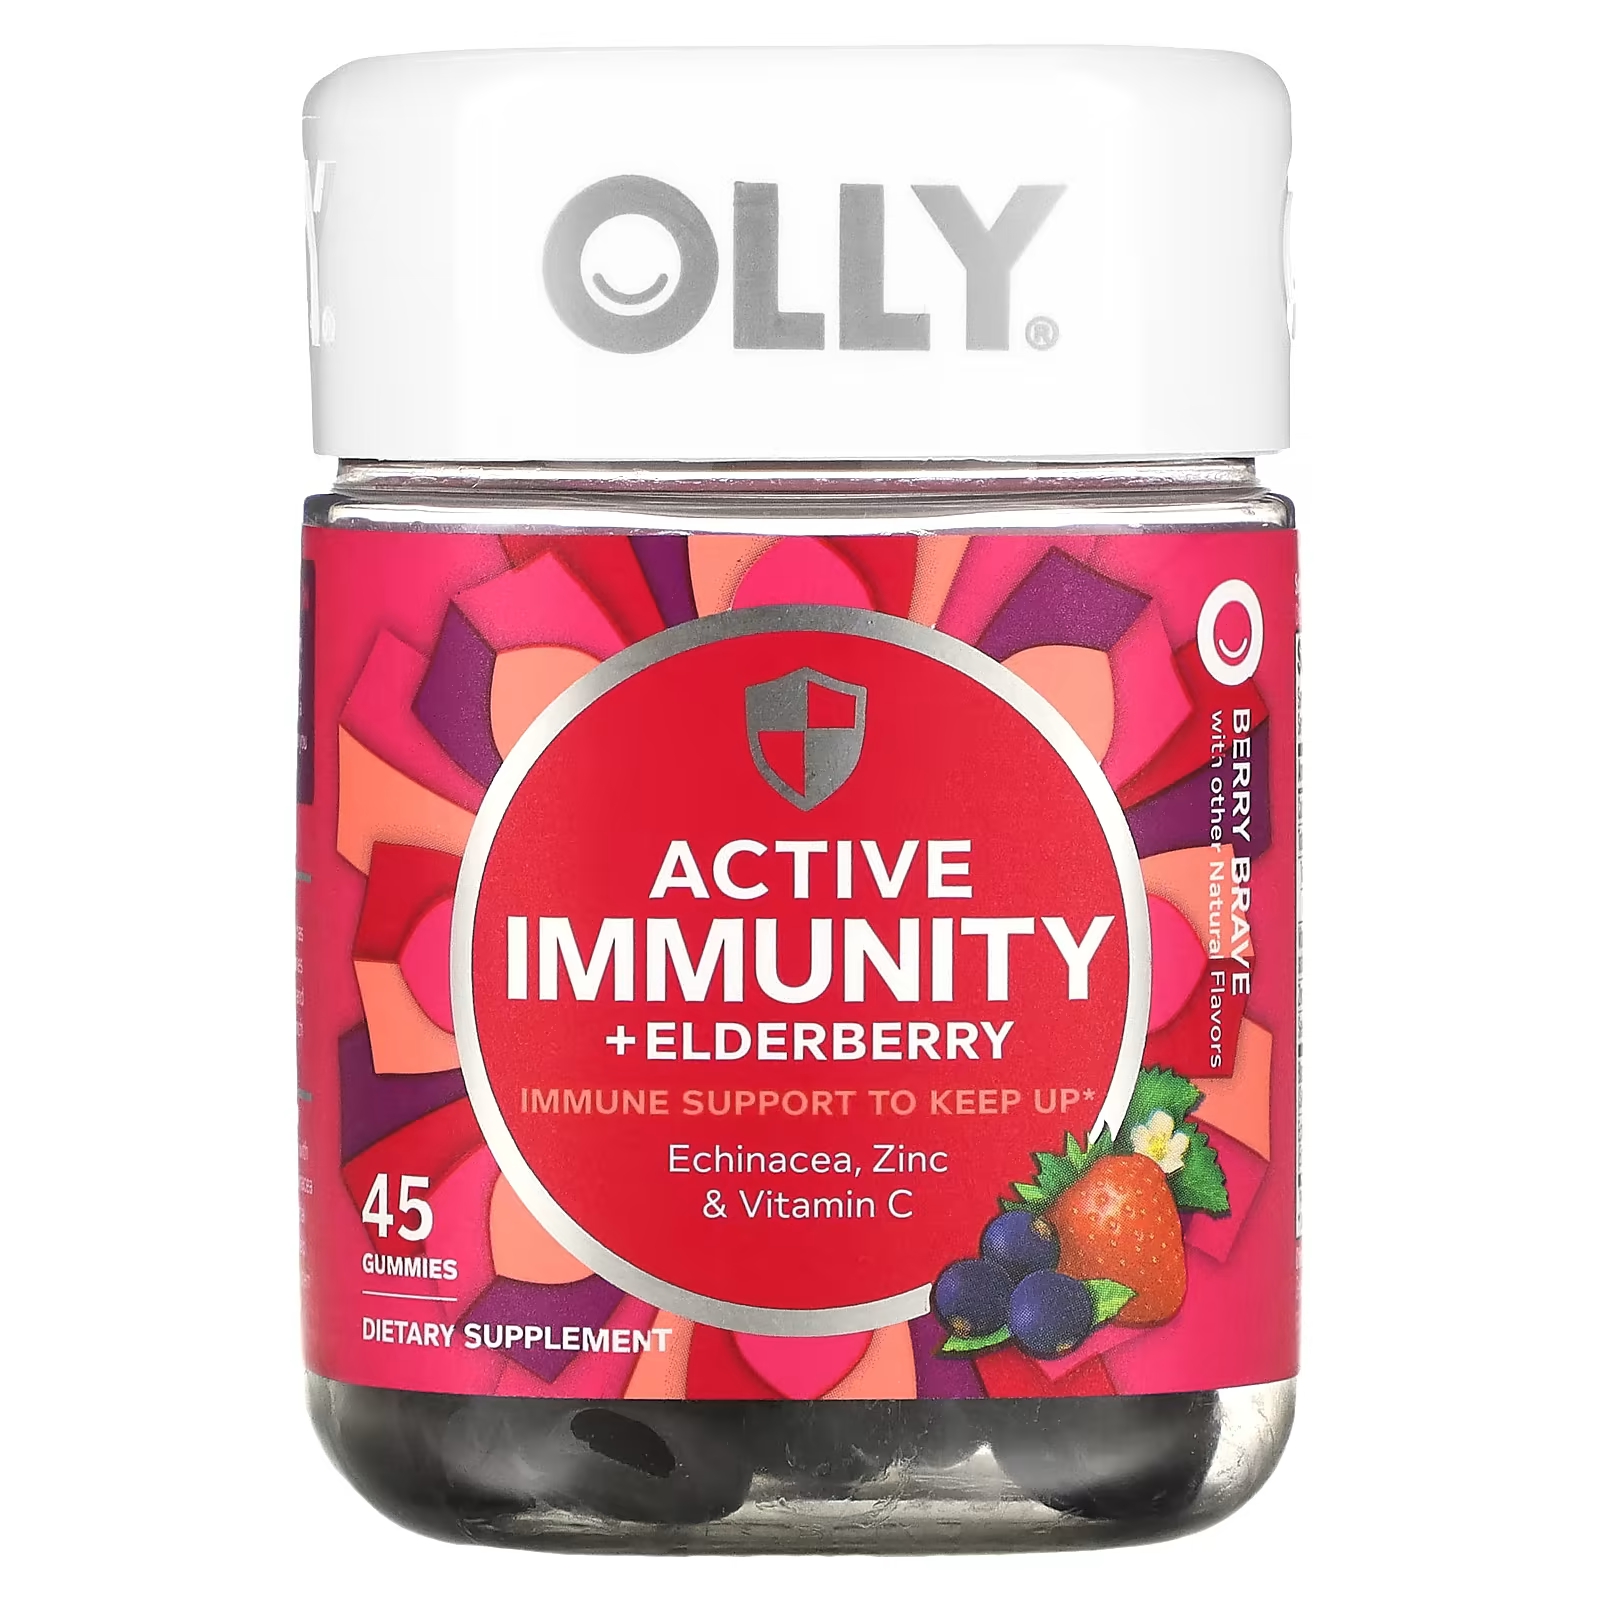 Пищевая добавка Olly Active Immunity + Elderberry Berry Brave, 45 жевательных таблеток olly active immunity elderberry berry brave 45 жевательных таблеток